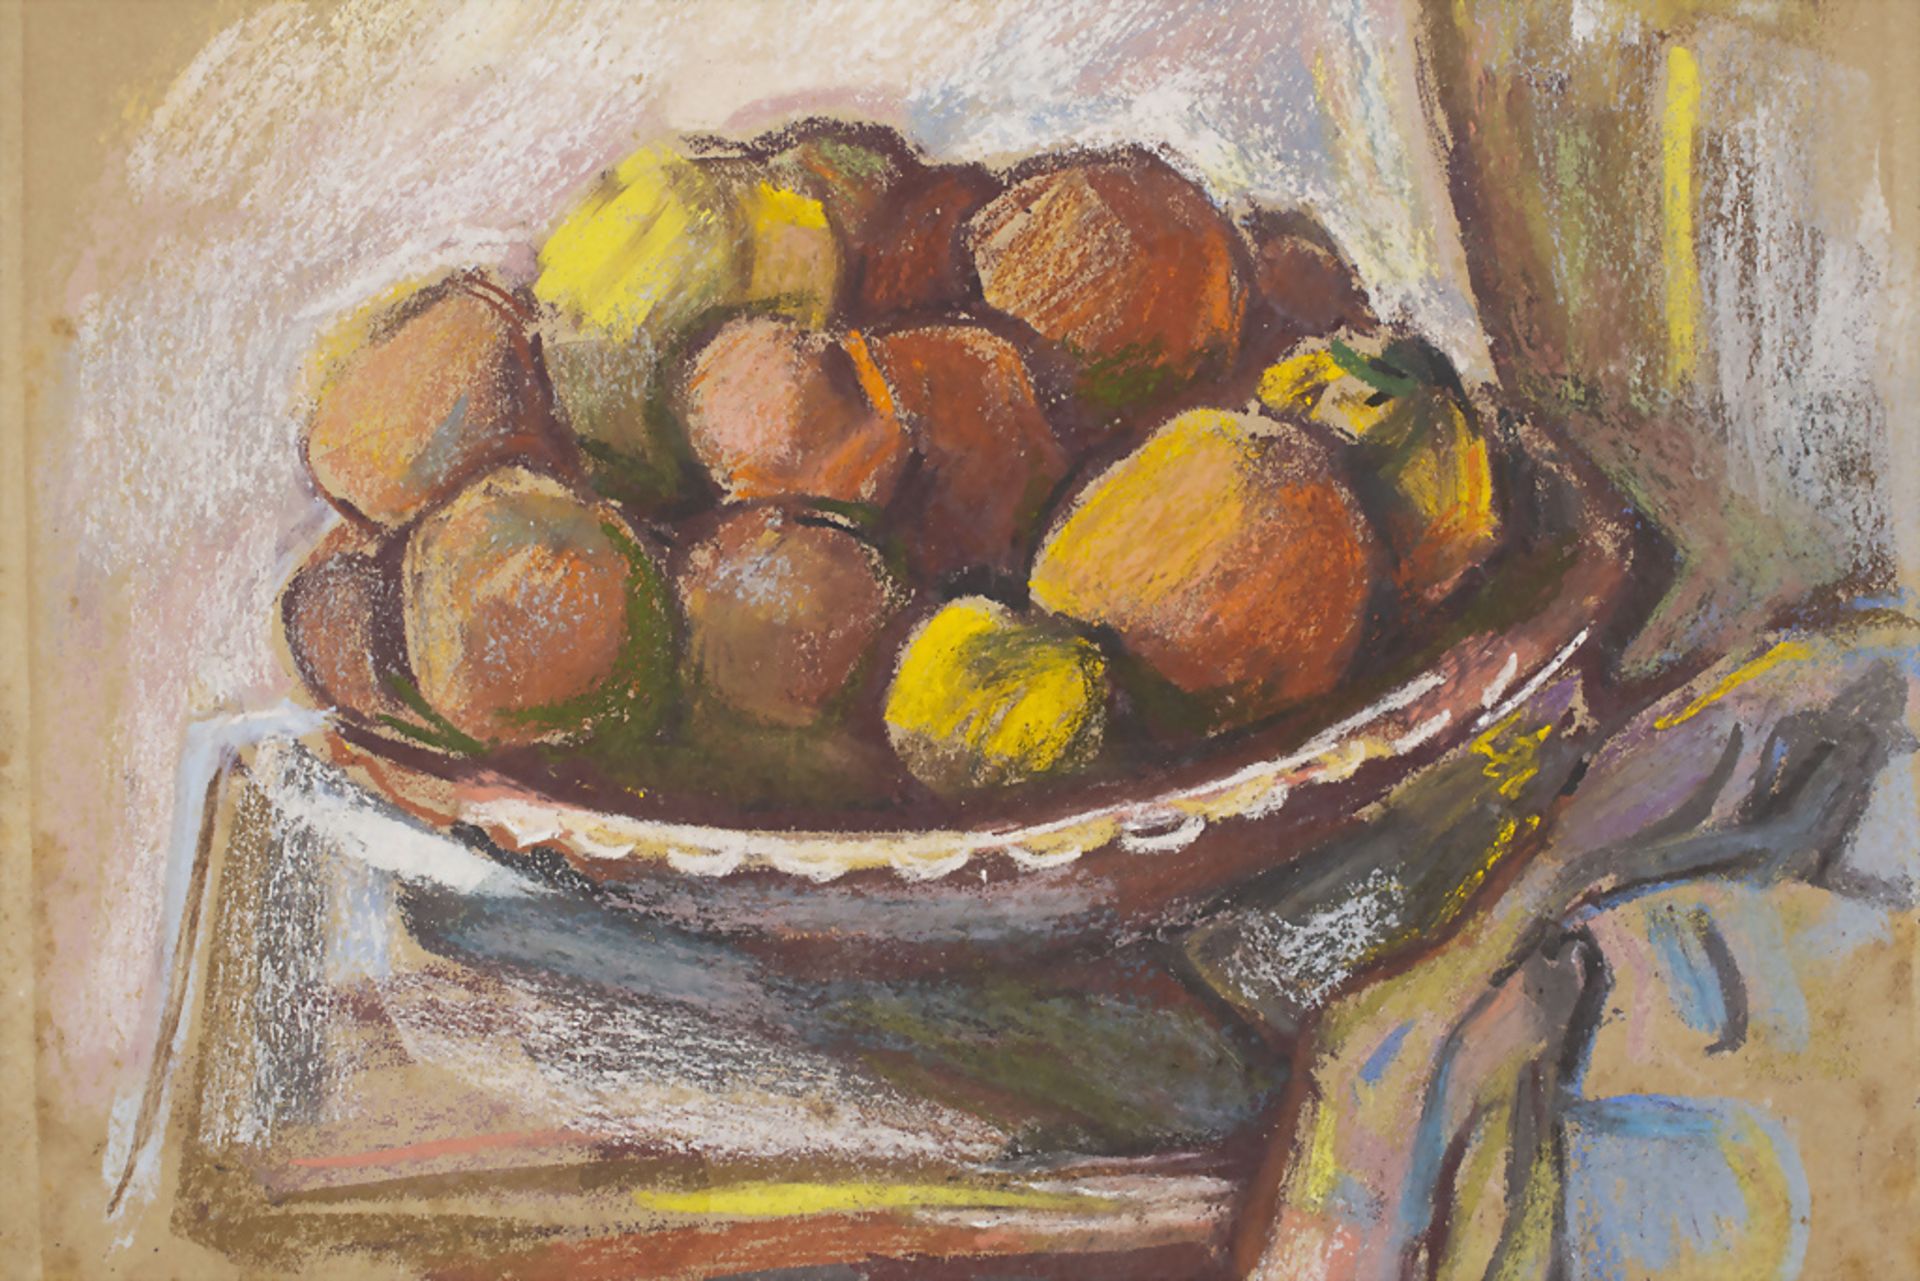 Richard ZIEGLER (1891-1992), Stillleben 'Fruchtschale' / Still life 'fruit basket', 1970 - Bild 2 aus 6